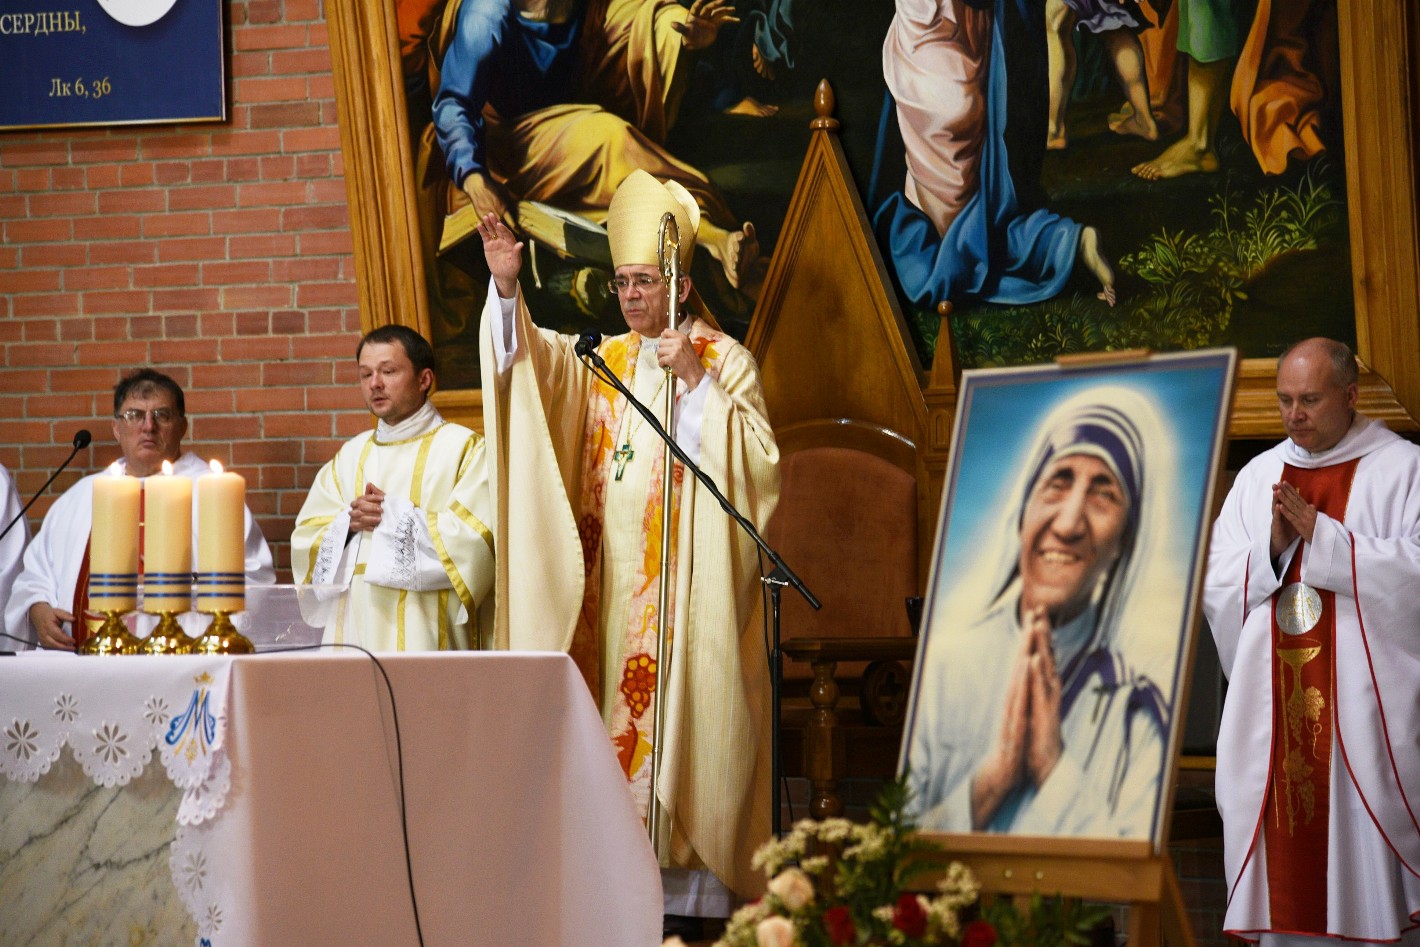 Богослужение, посвященное святой Терезе Калькуттской, прошло в Кафедральном соборе Новосибирска